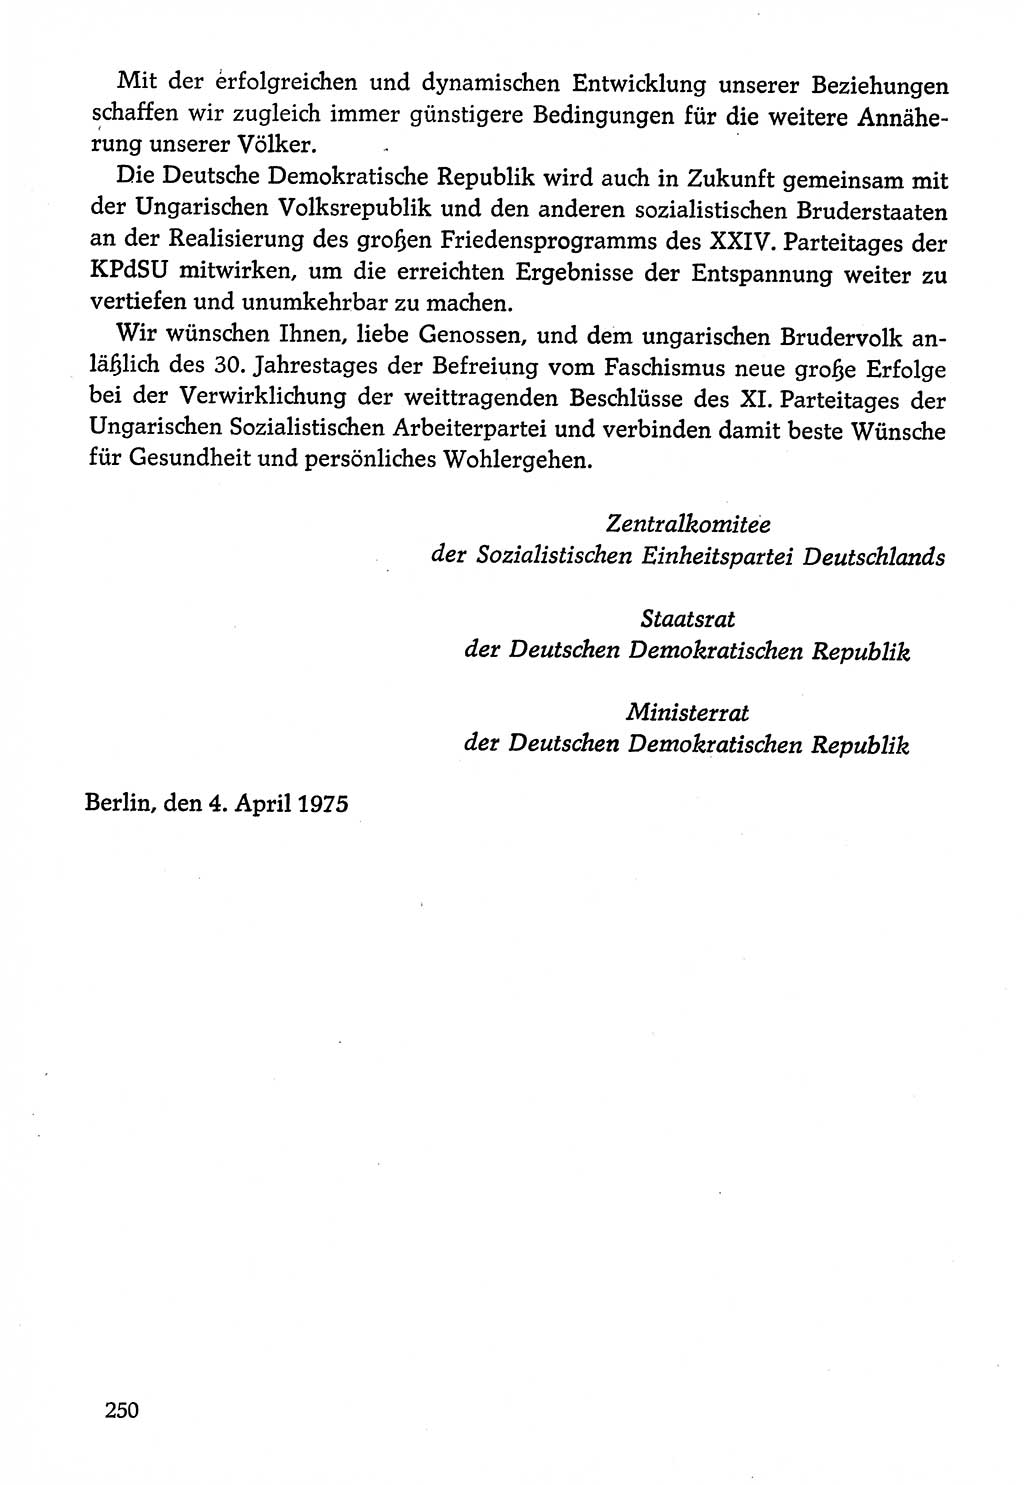 Dokumente der Sozialistischen Einheitspartei Deutschlands (SED) [Deutsche Demokratische Republik (DDR)] 1974-1975, Seite 250 (Dok. SED DDR 1978, Bd. ⅩⅤ, S. 250)